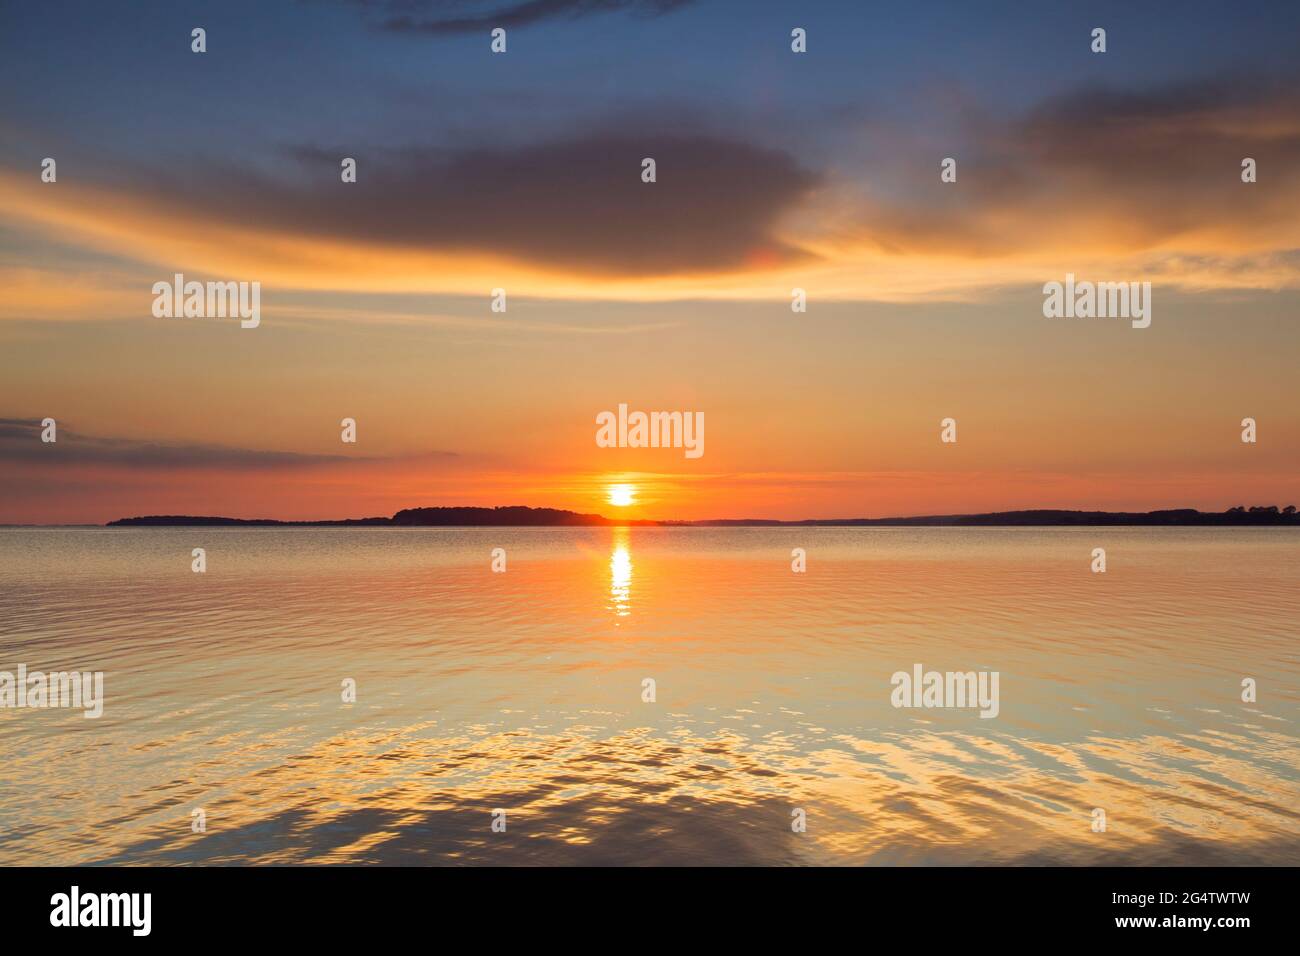 Sonnenuntergang über der Ostsee von der pommerschen Insel Rügen / Rügen, Mecklenburg-Vorpommern / Mecklenburg Vorpommern, Deutschland Stockfoto